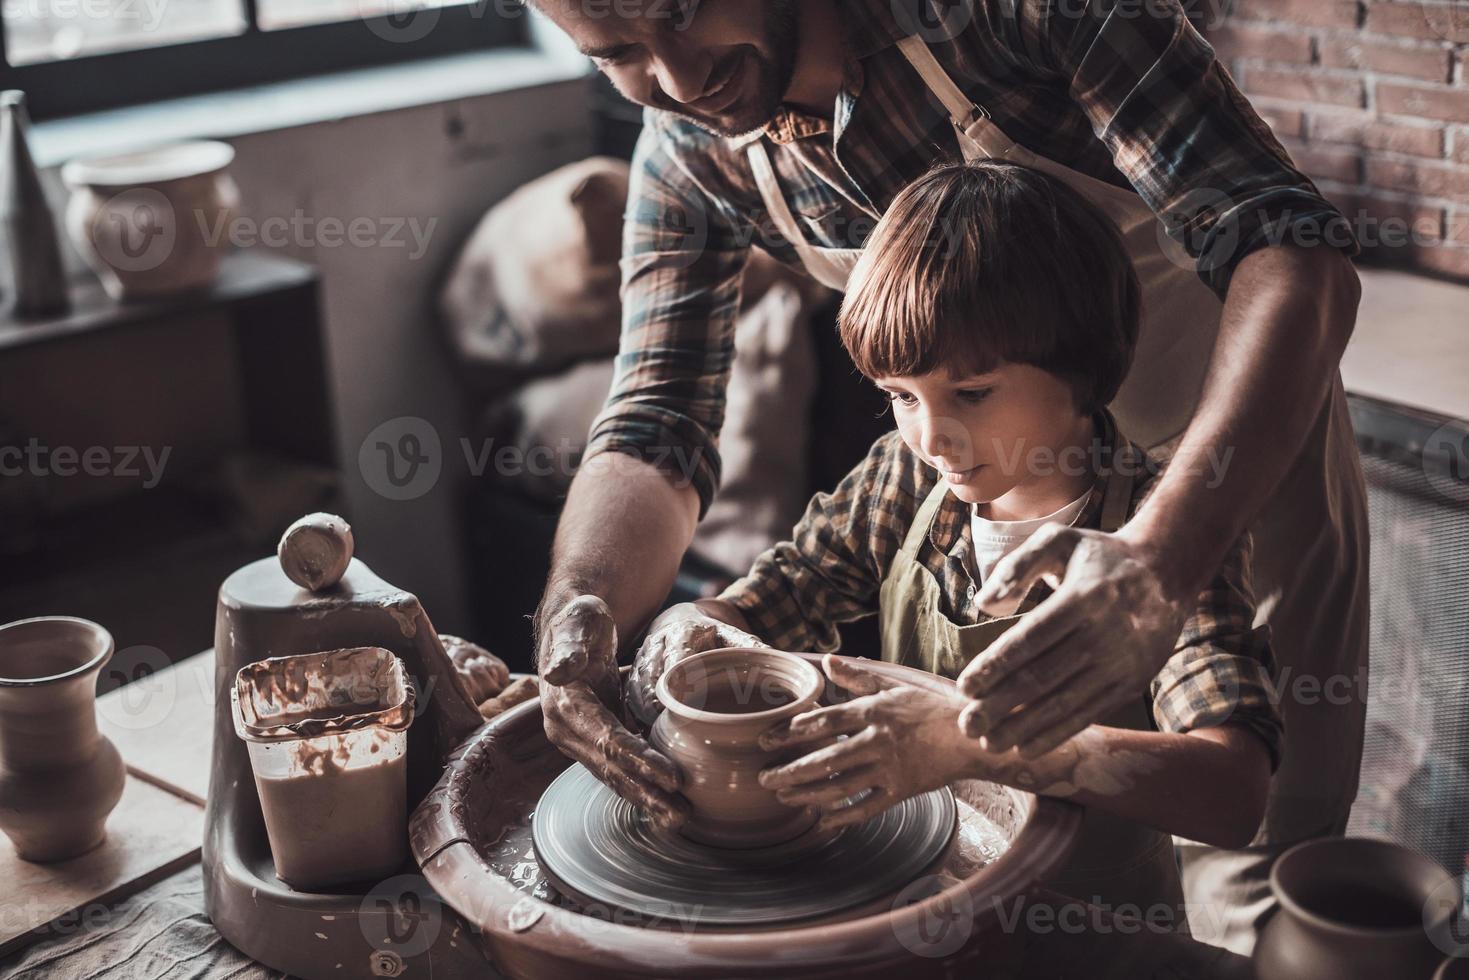 aprendendo nova habilidade de oleiro. vista superior do jovem alegre e garotinho fazendo pote de cerâmica na aula de cerâmica foto